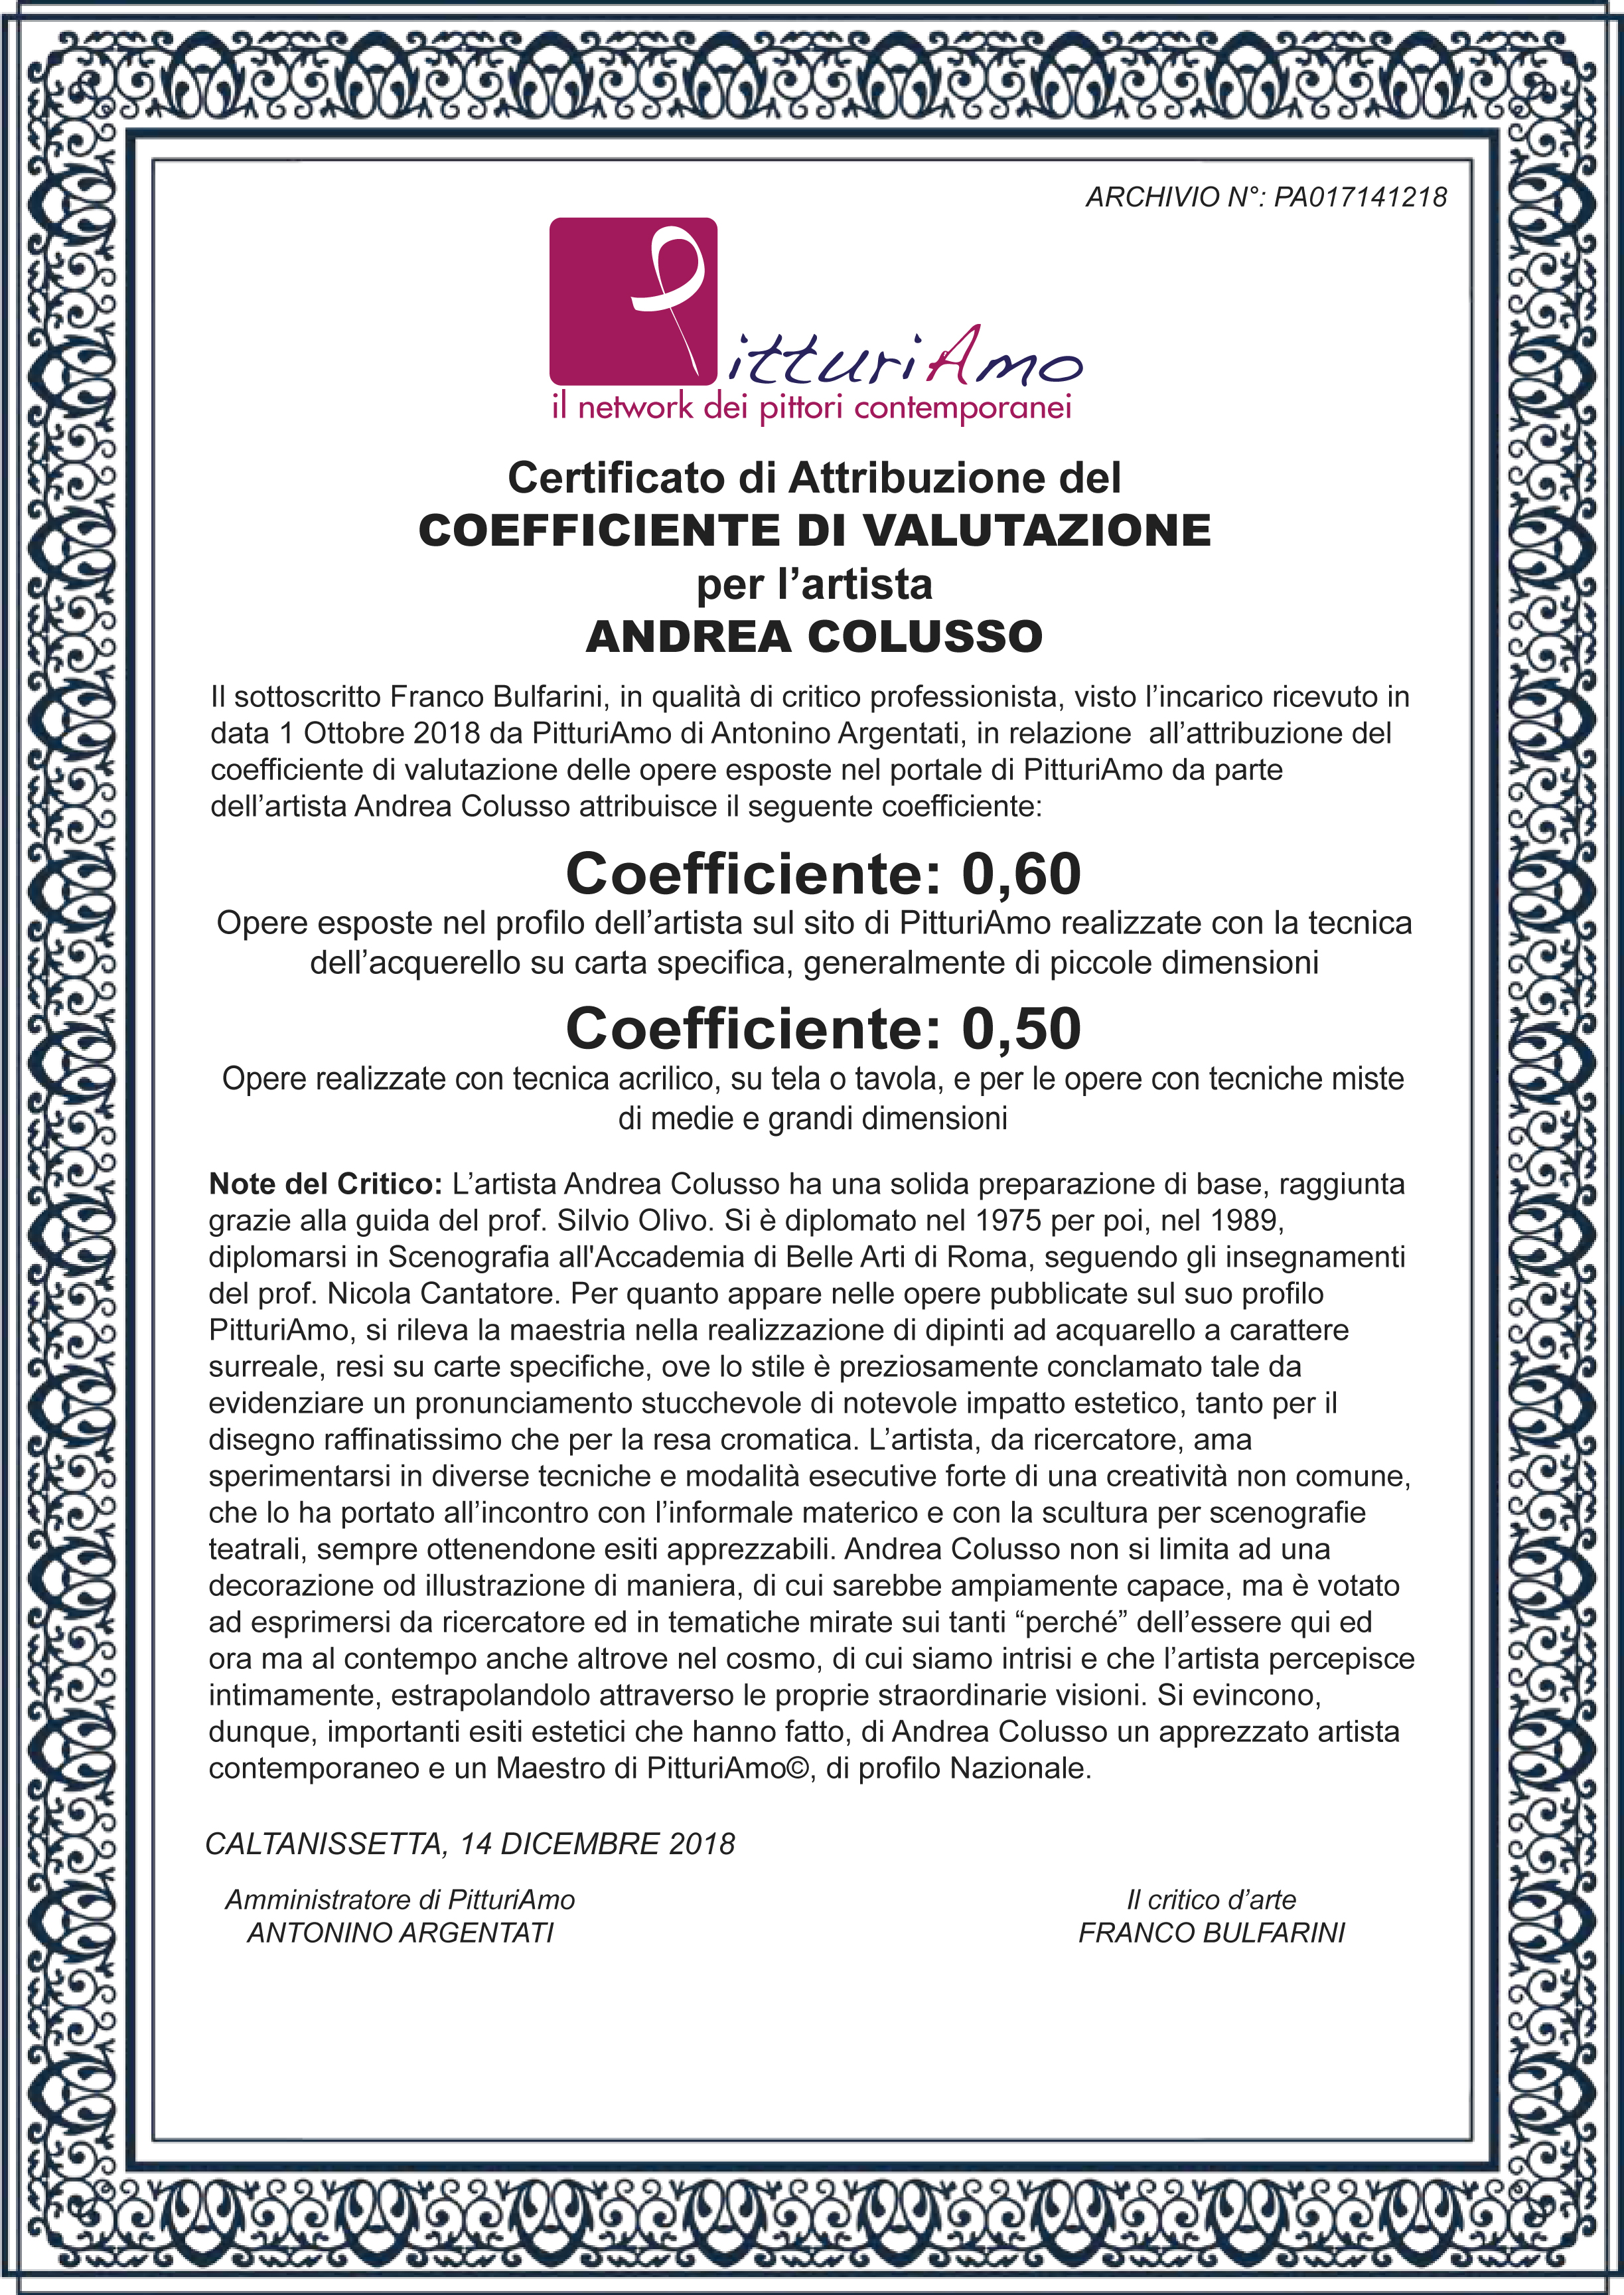 Coefficiente artistico di Andrea Colusso, artista e Maestro di PitturiAmo©